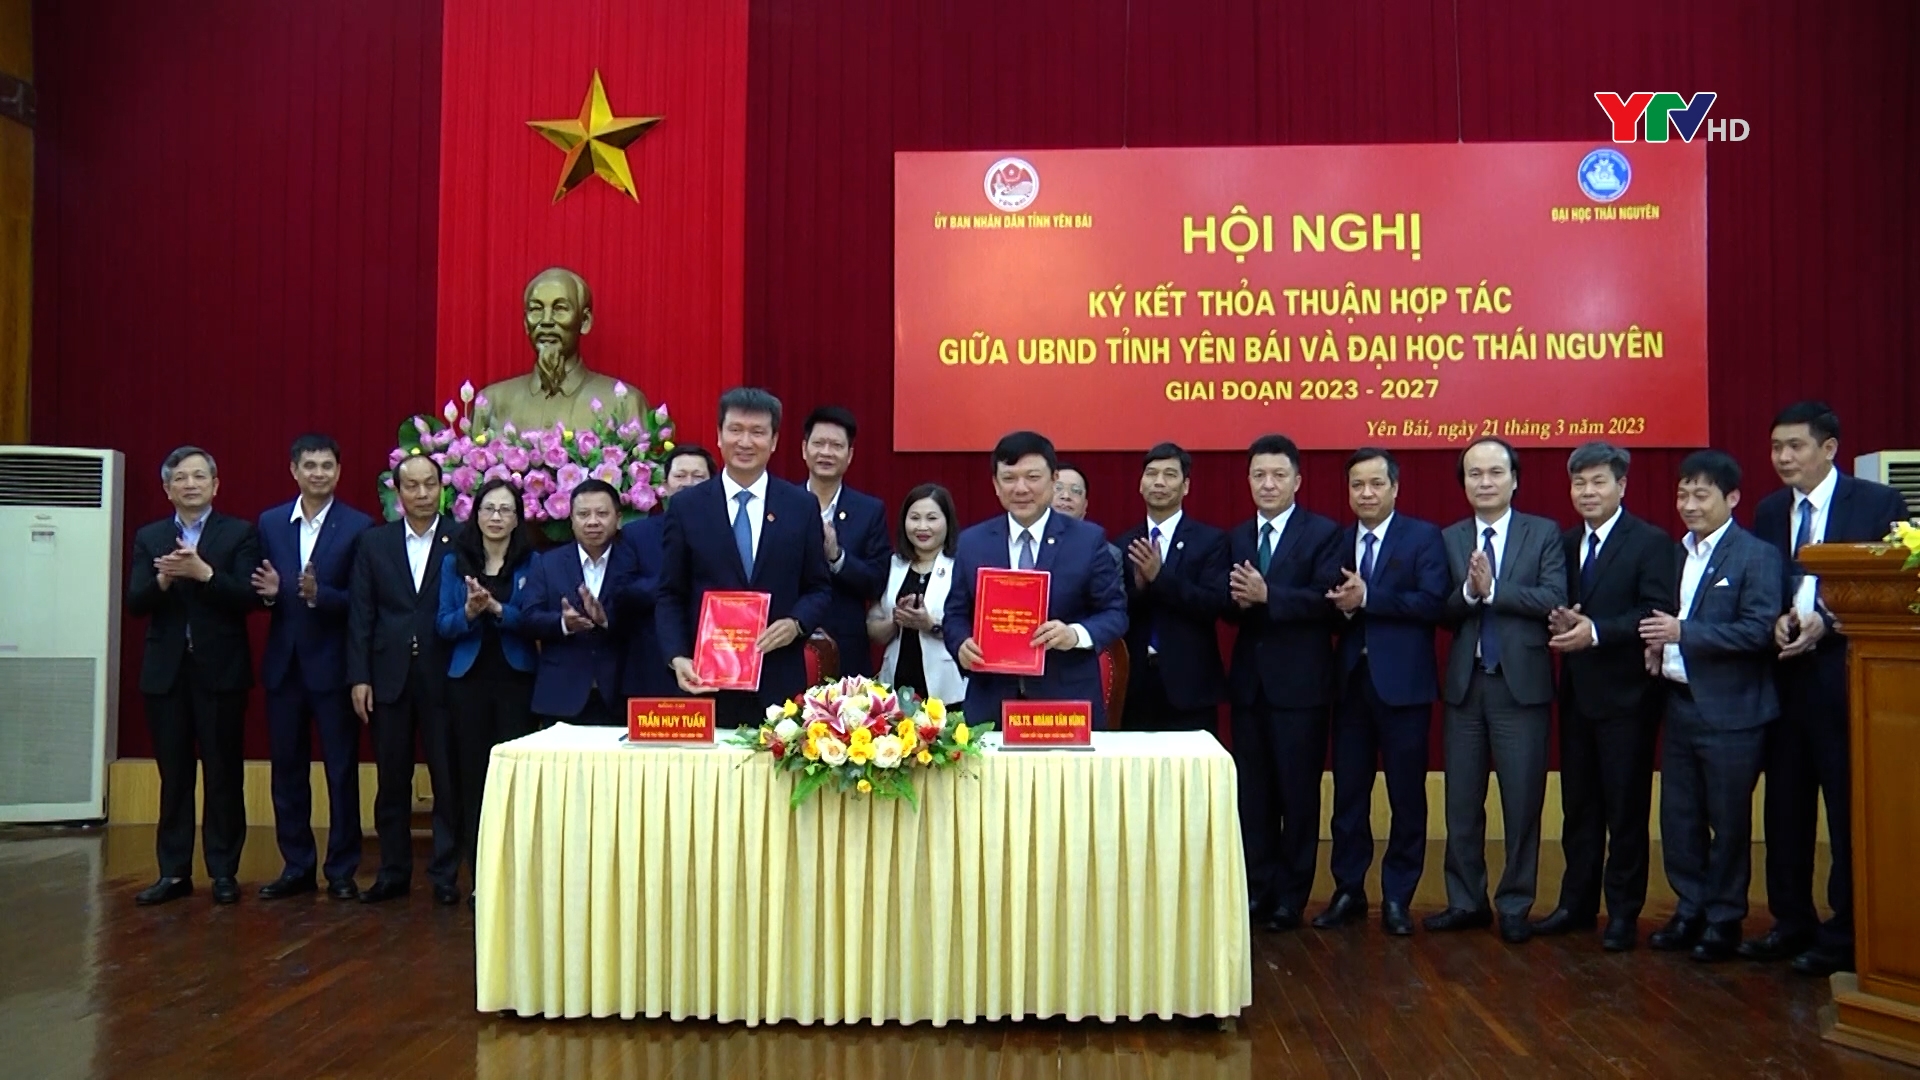 UBND tỉnh Yên Bái và Đại học Thái Nguyên ký kết thỏa thuận hợp tác